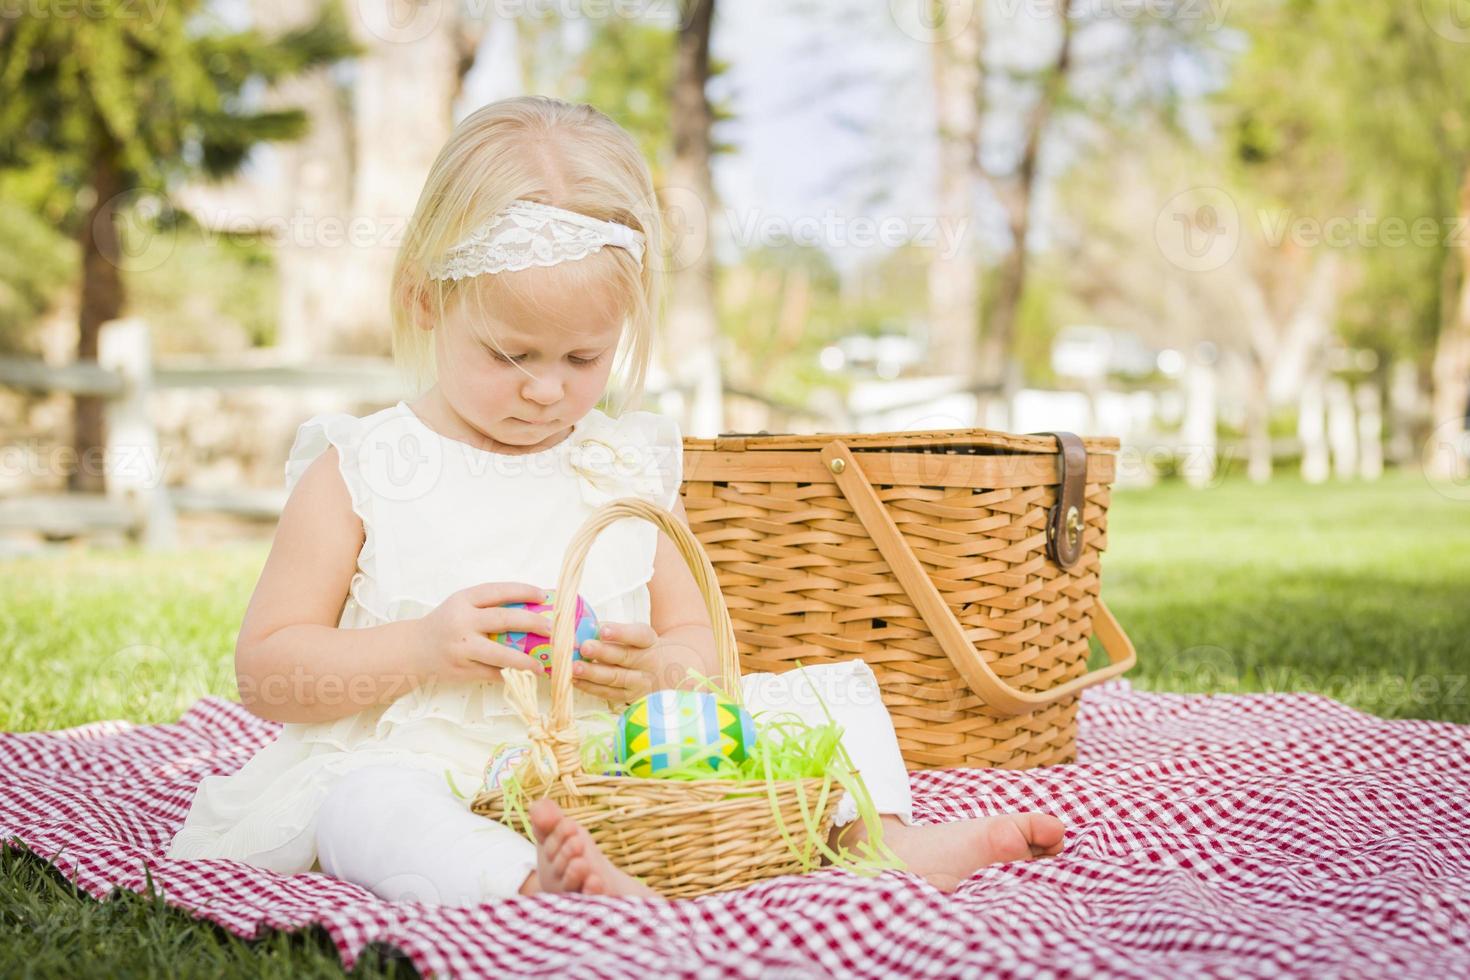 linda niña disfrutando de sus huevos de pascua en una manta para picnic foto